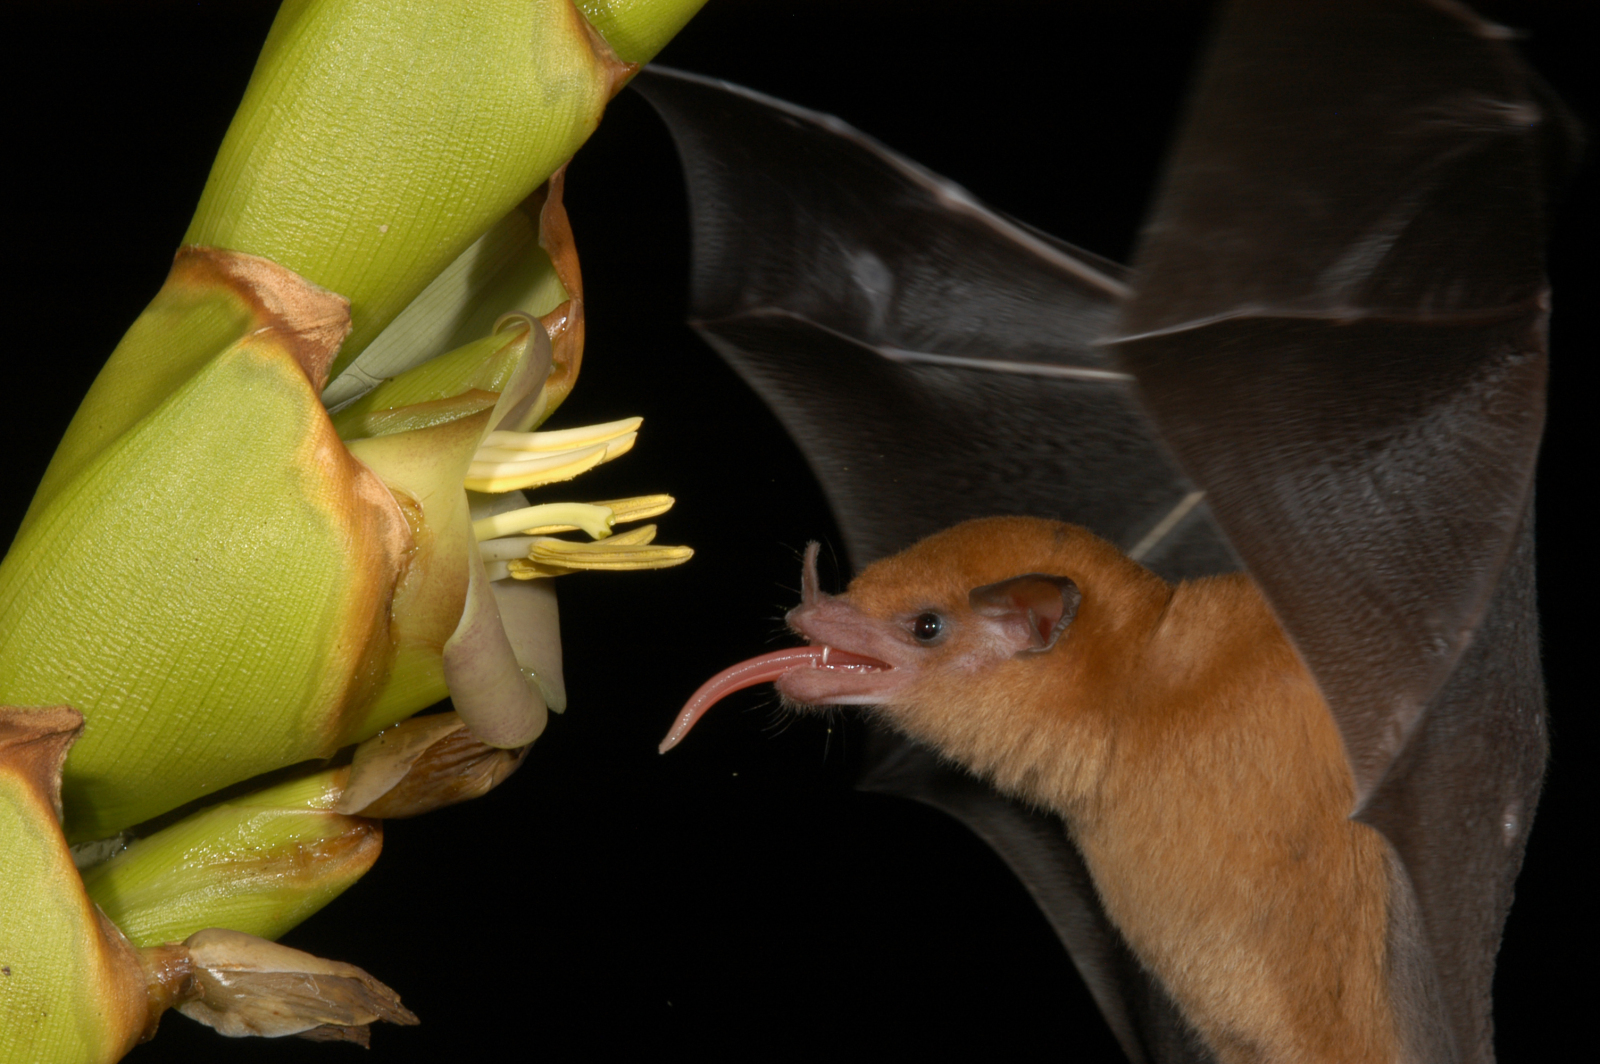 Feeding bat